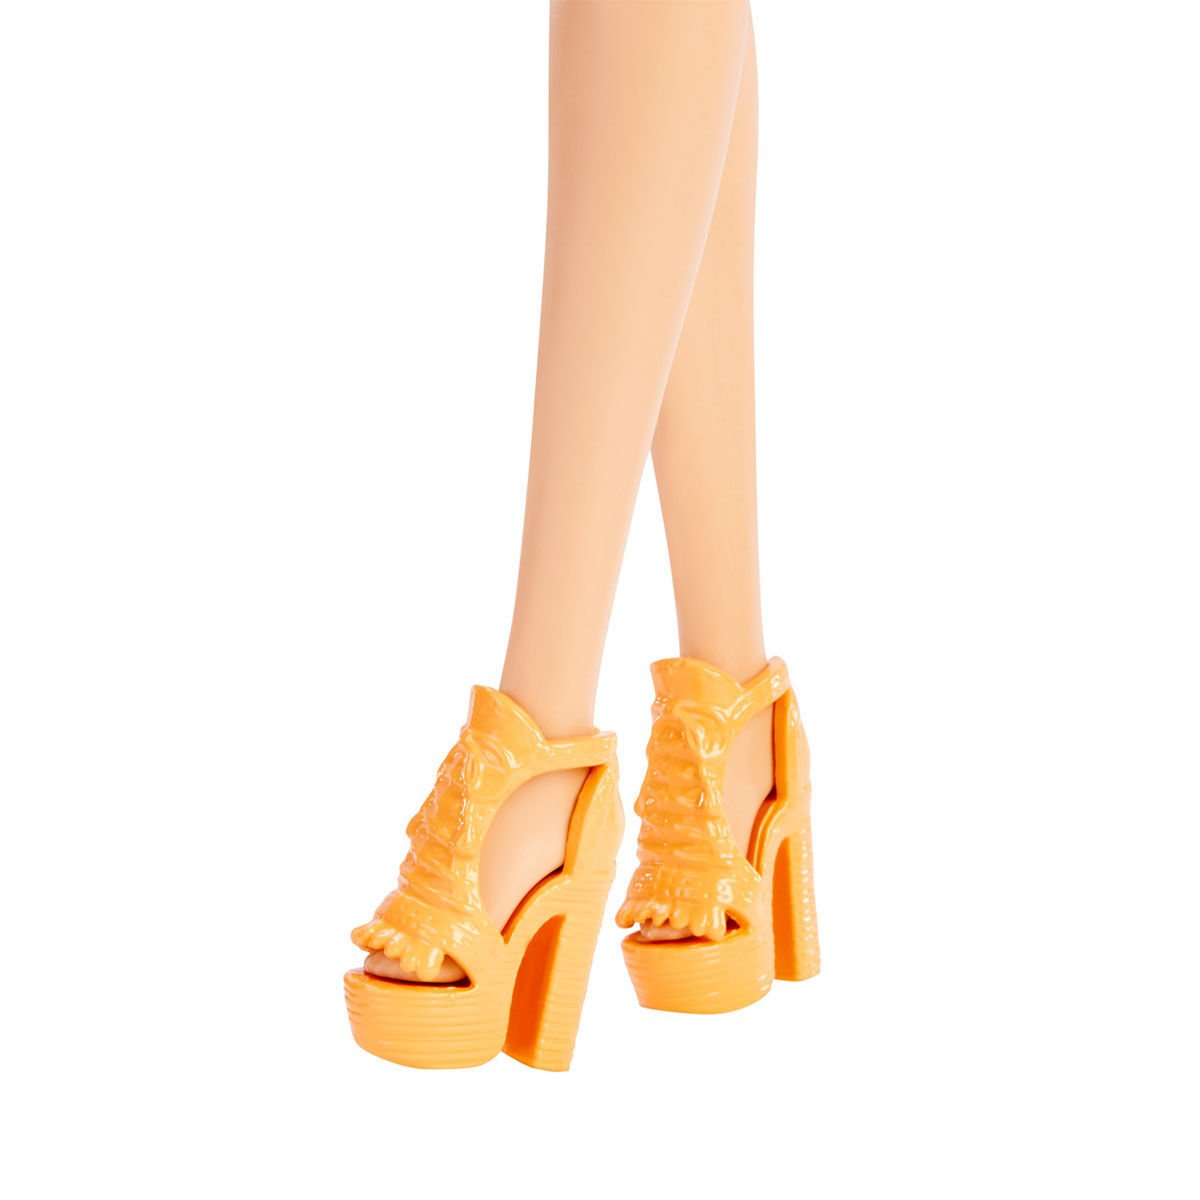 HBV15 Barbie No:181 Fashionistas Sarışın Meyve Desenli Elbiseli